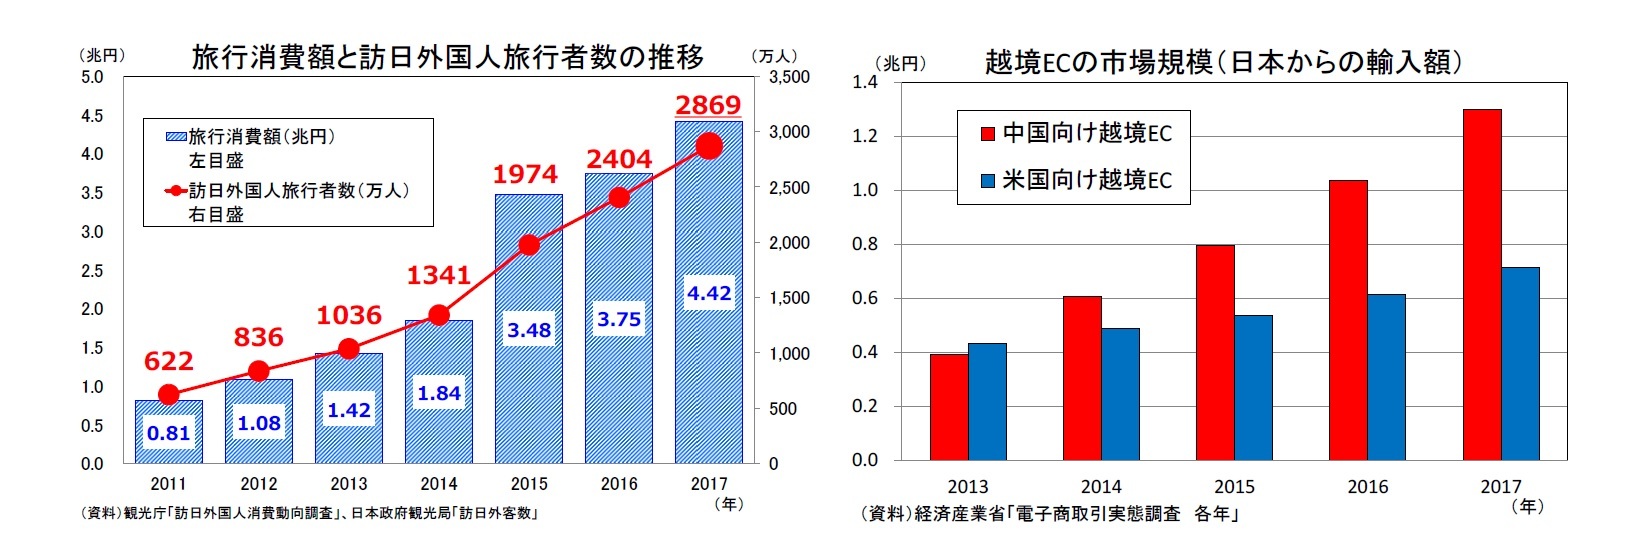 旅行消費額と訪日外国人旅行者数の推移/越境ECの市場規模（日本からの輸入額）